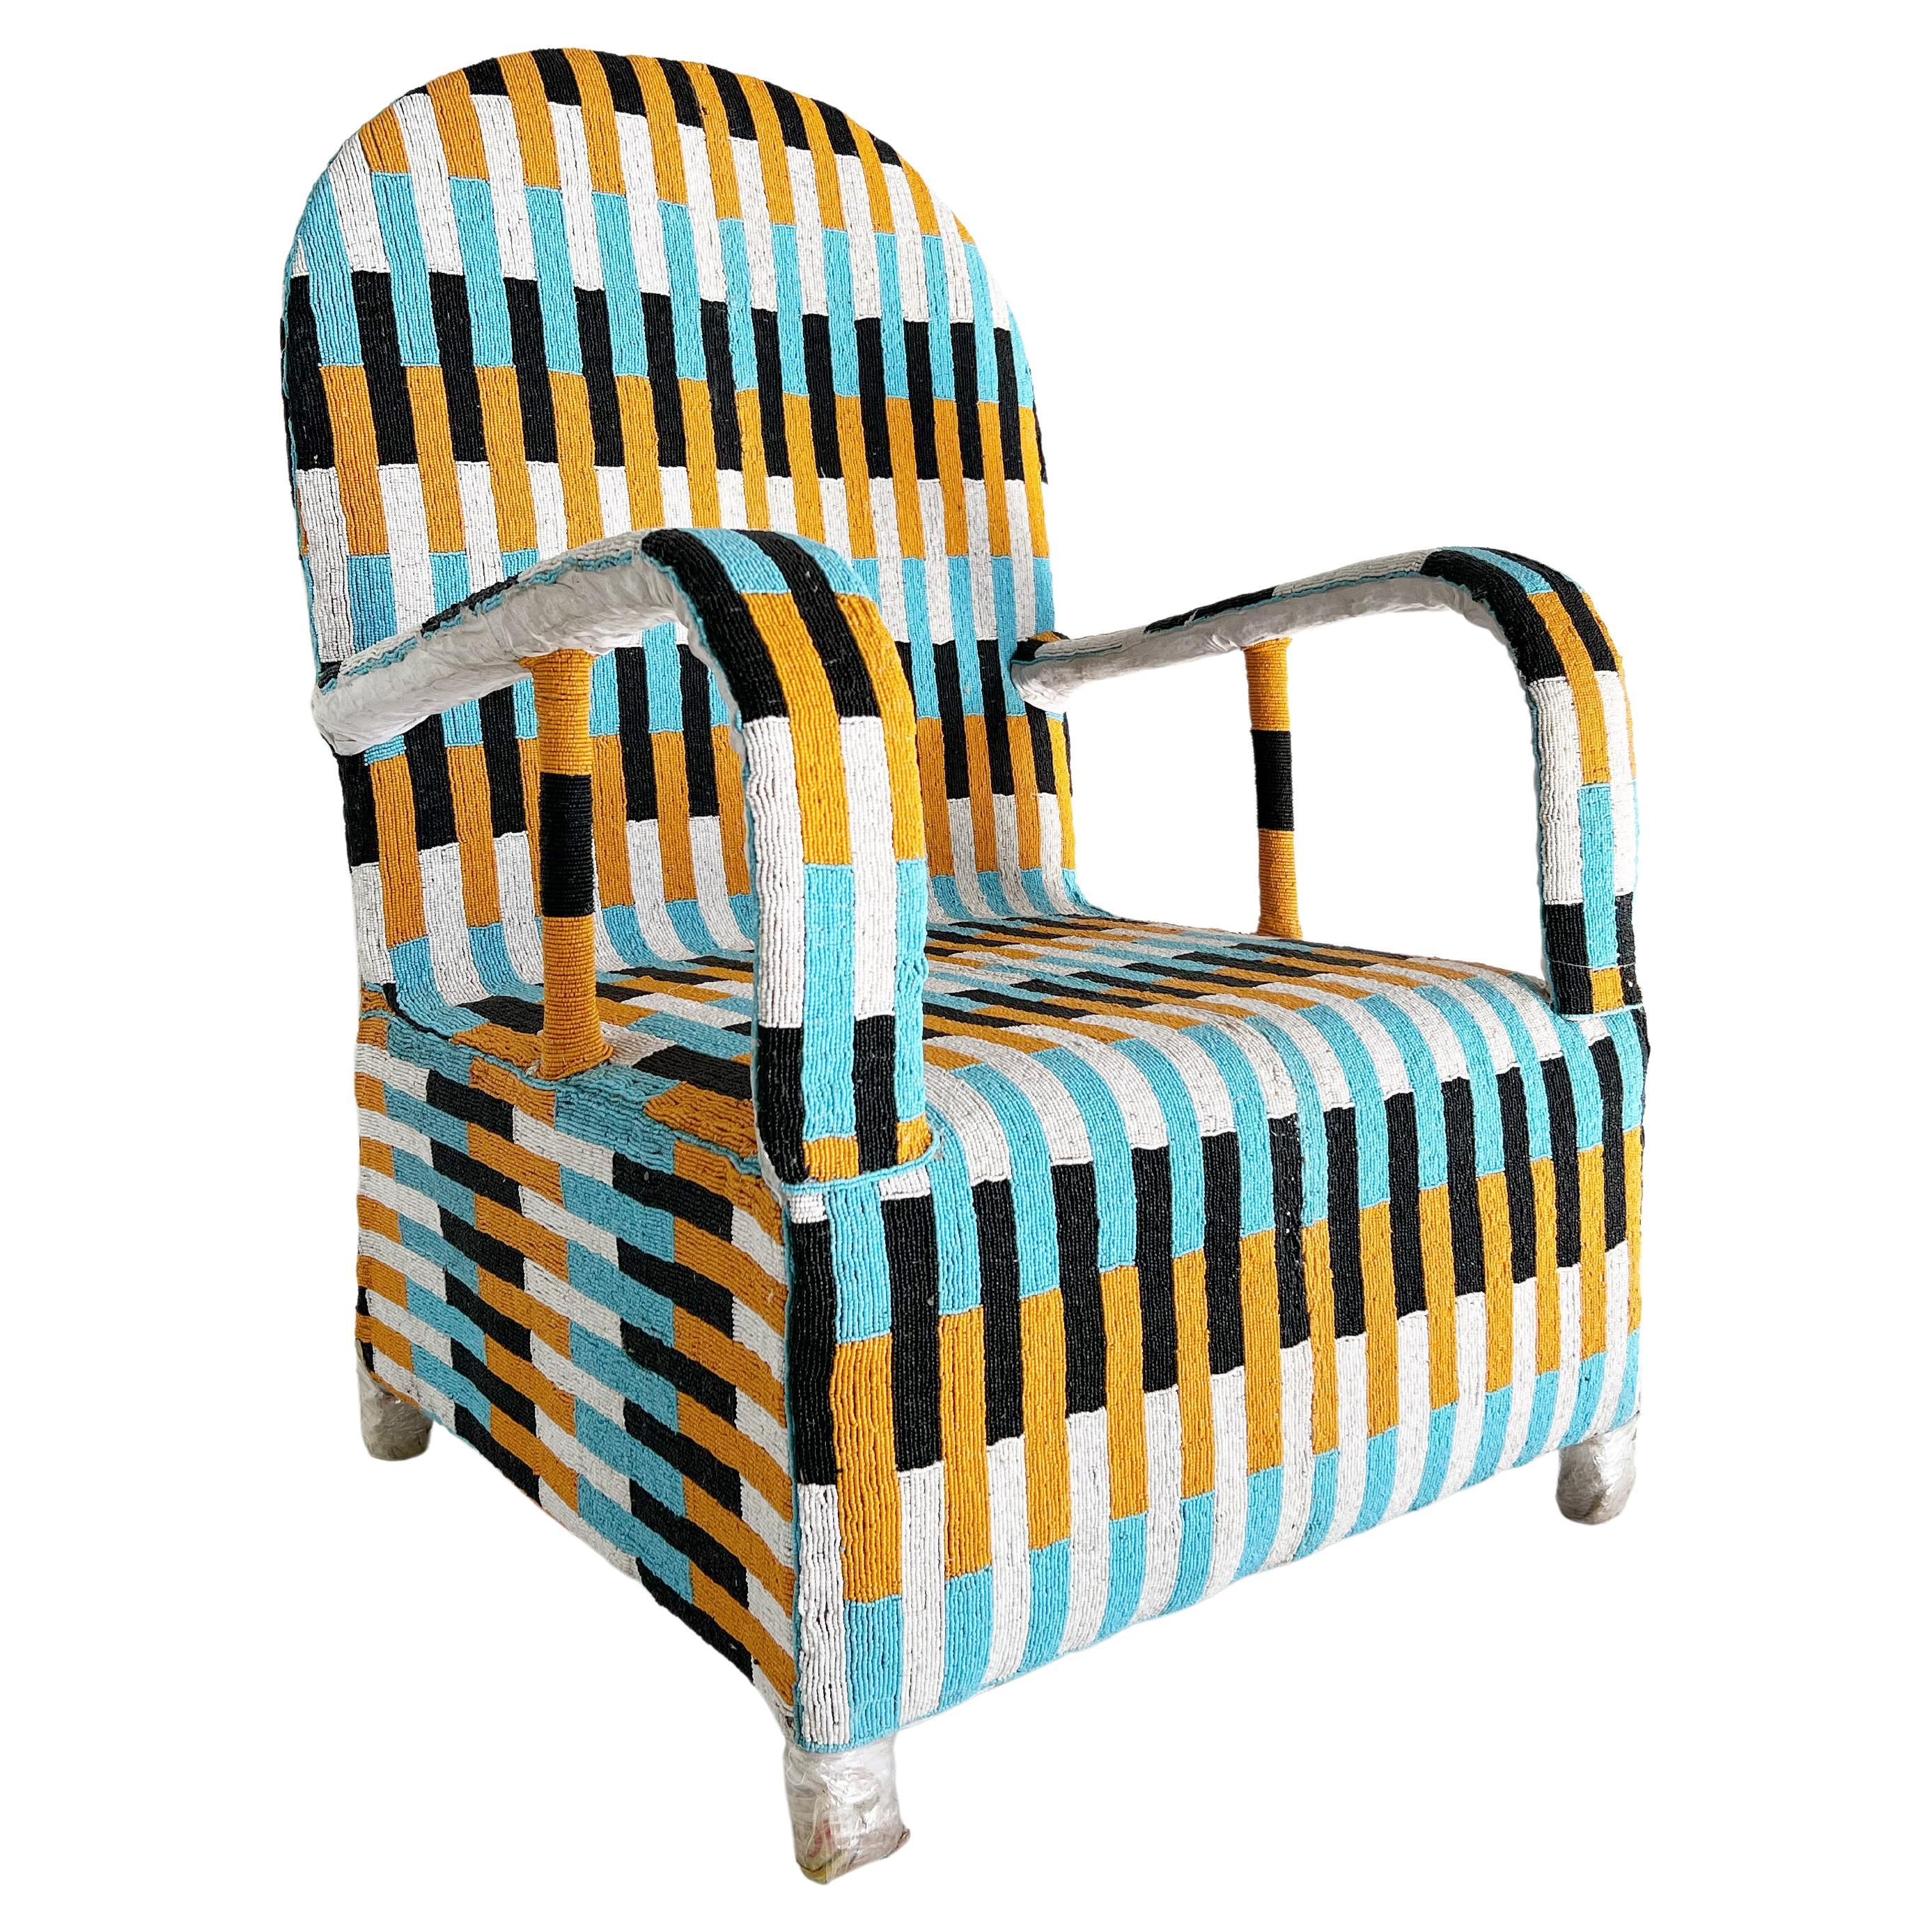 Afrikanischer Yoruba-Stuhl mit Perlenbesatz, mehrfarbig, 2 Stühle verfügbar im Angebot